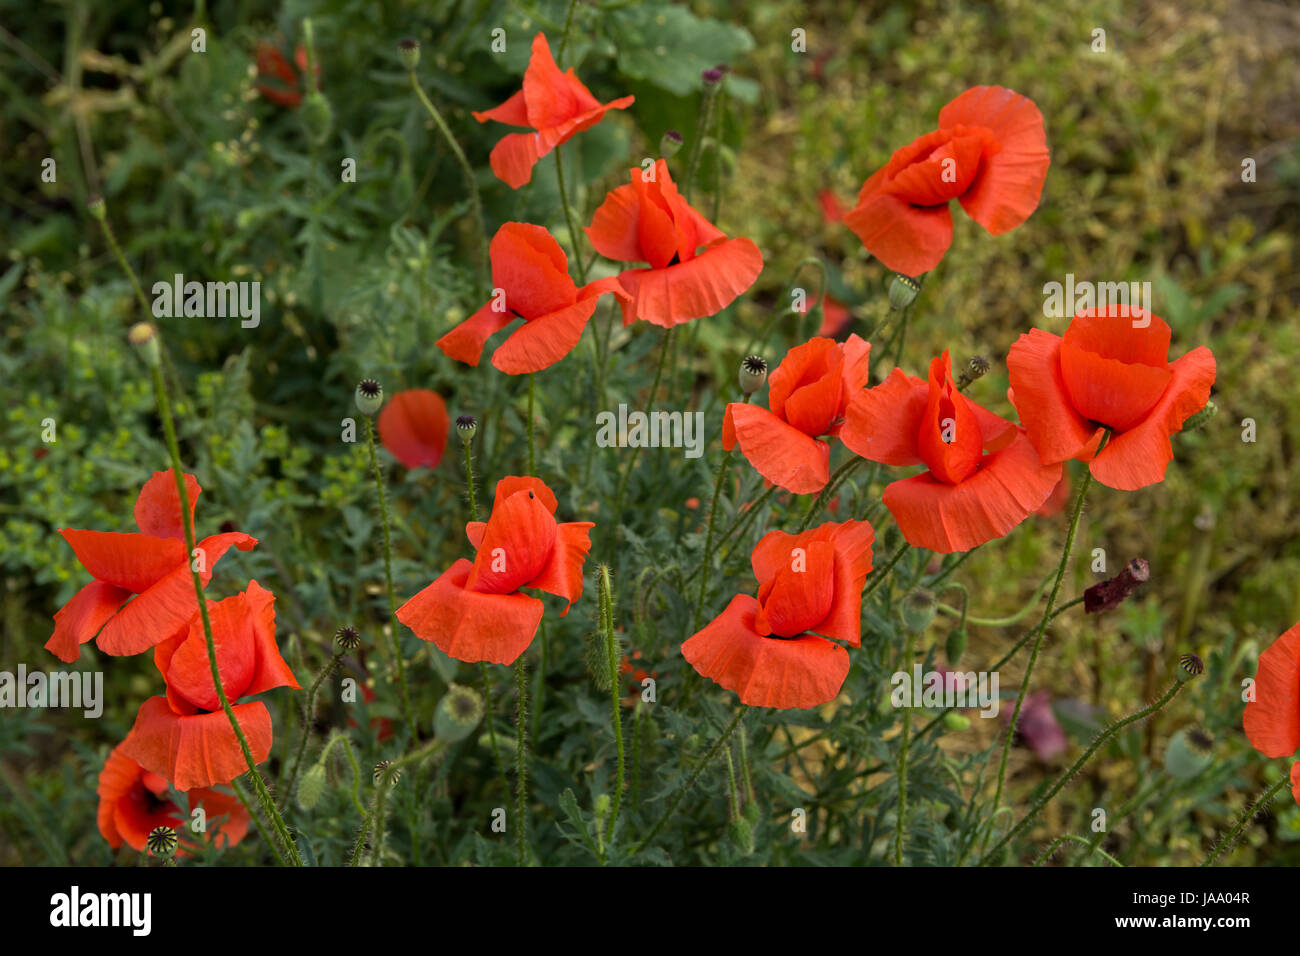 Poppy flowers in the field Stock Photo